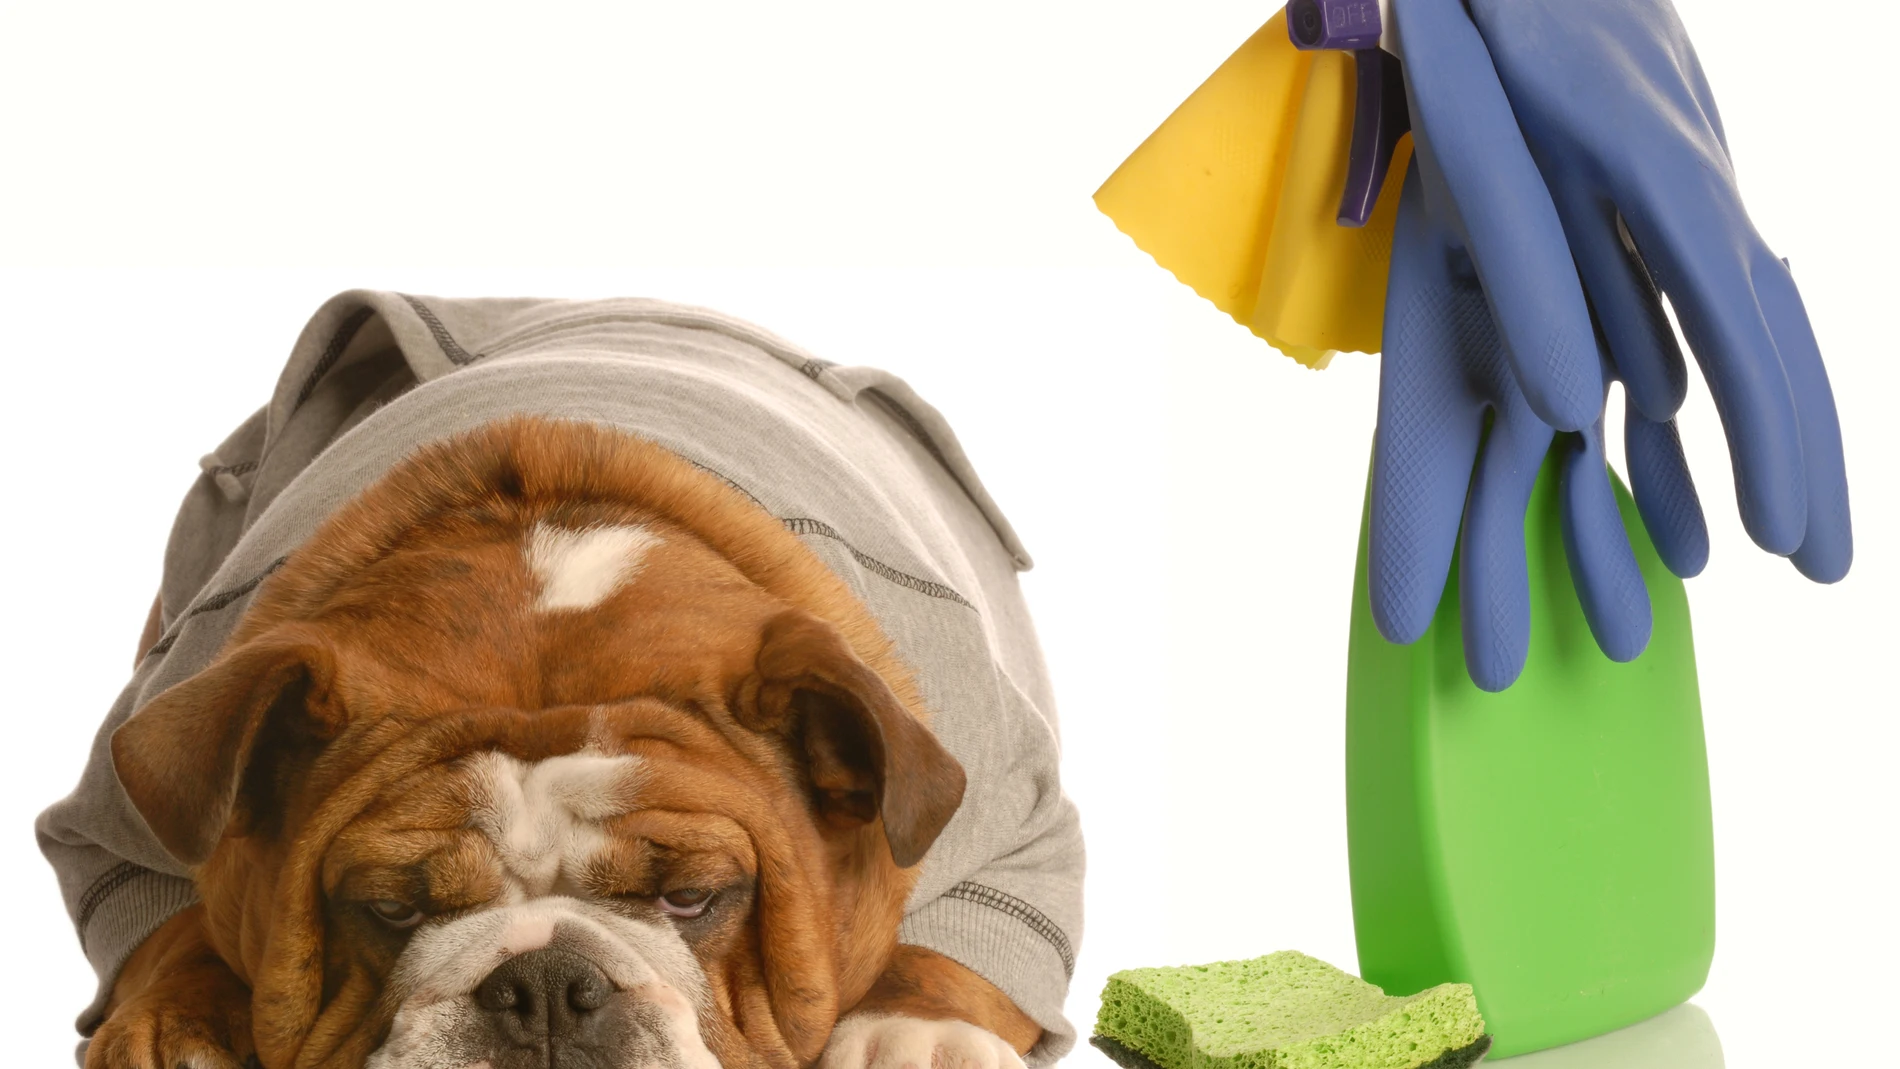 La correcta limpieza de la orina de un perro evitará que vuelva a hacer pis en el mismo sitio | Fuente: Dreamstime